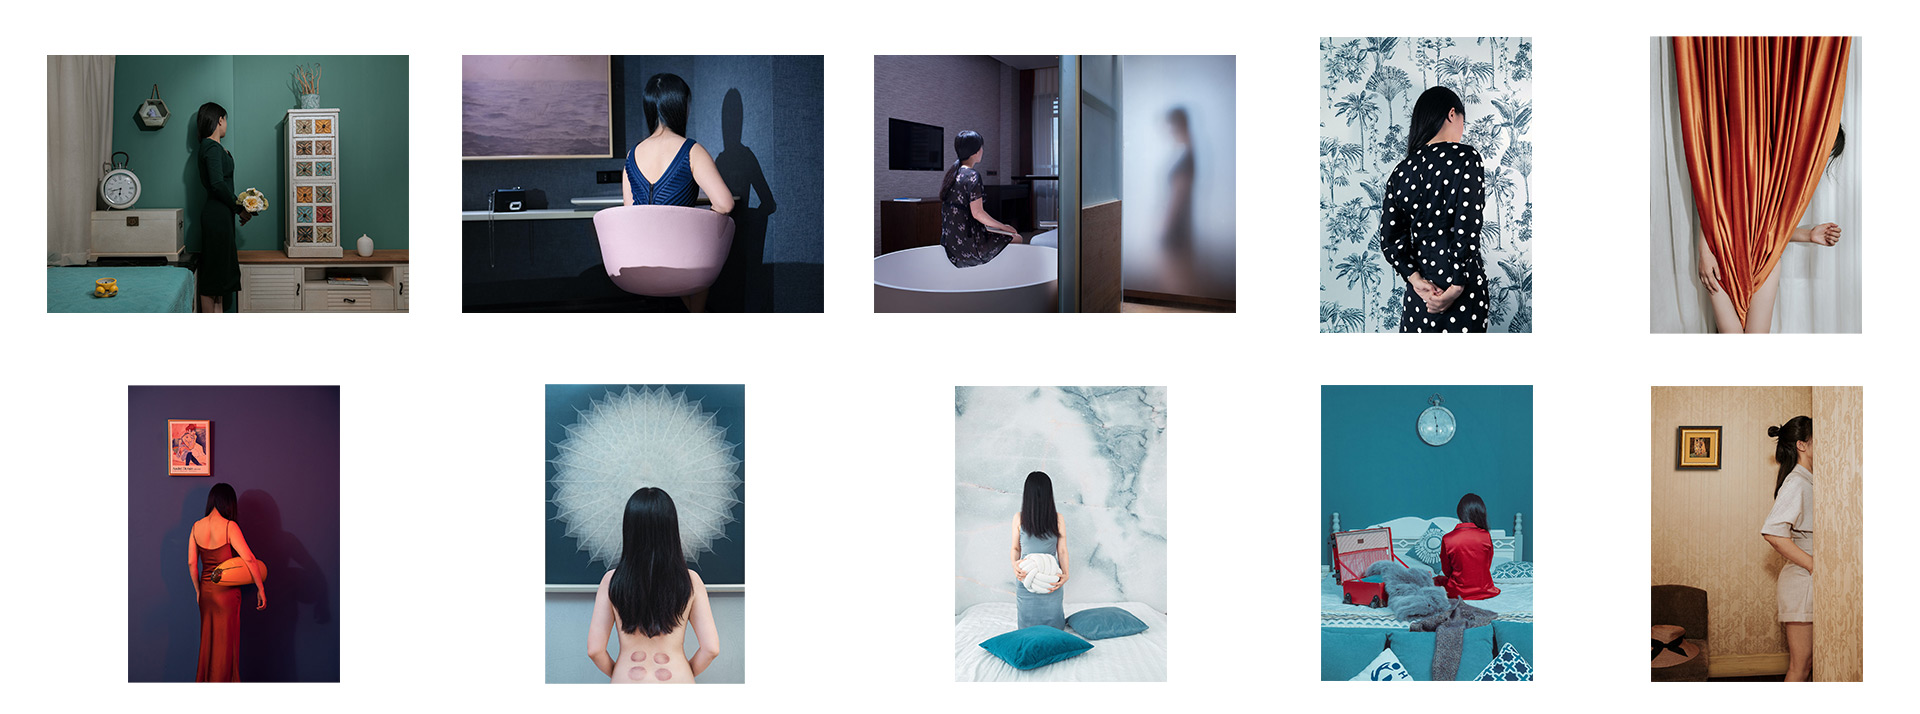 I, Myself and Me by Xueya Wang. Quzhou, Zhejiang China, 2020 - 2022